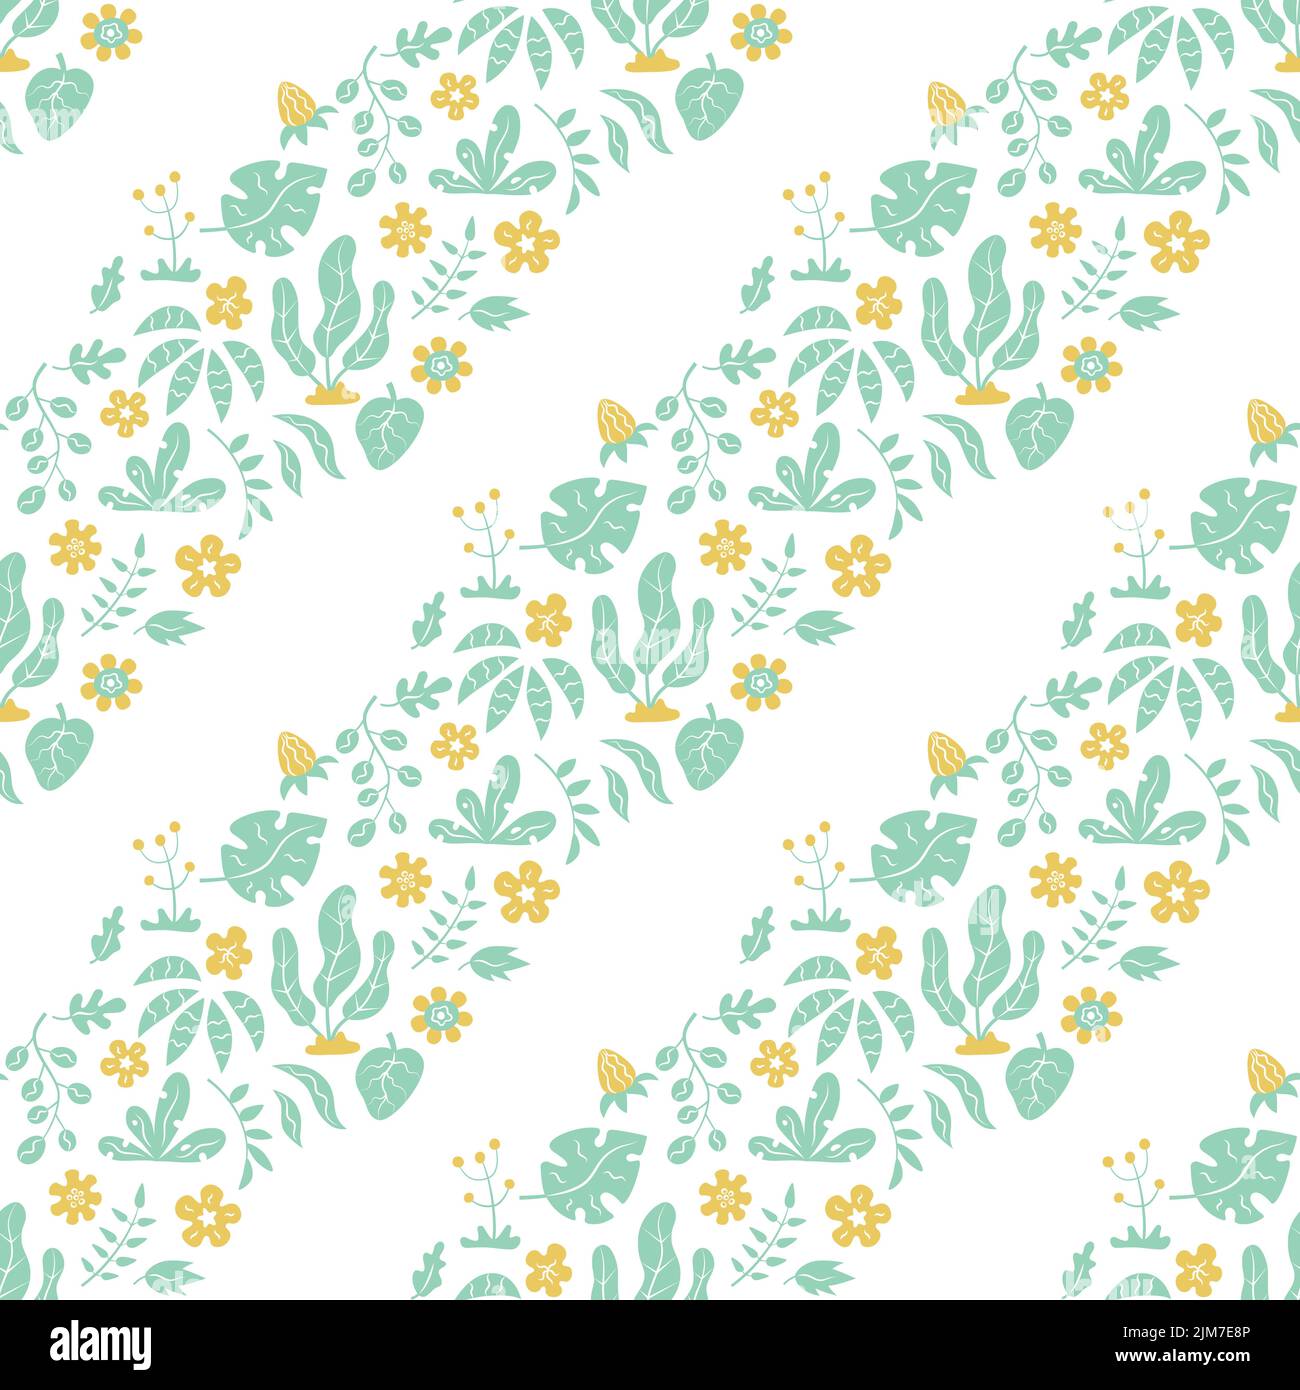 Motif sans couture avec feuilles vertes tropicales et fleurs jaunes sur fond blanc. Vecteur Illustration de Vecteur